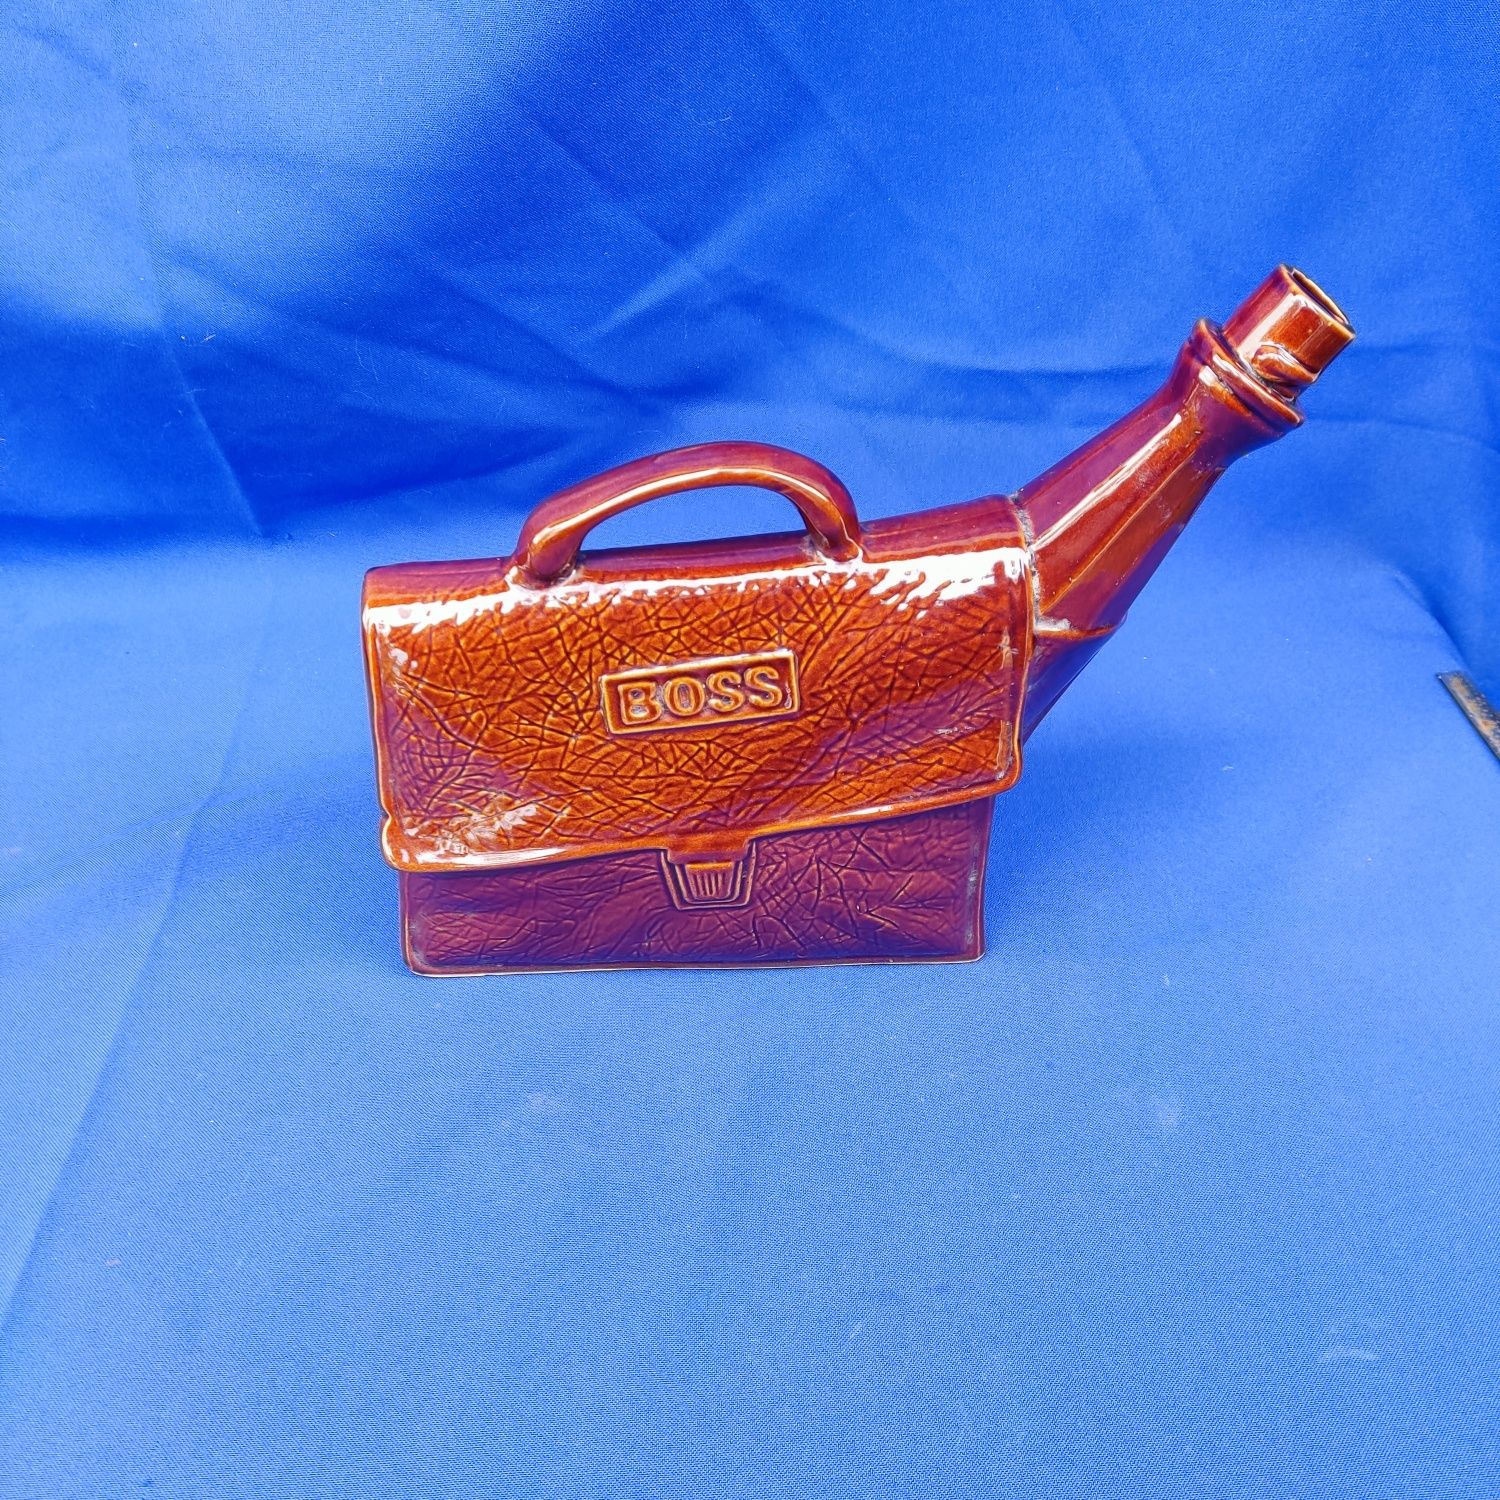 Подарок для мужчины Керамический штоф бутылка барсетка сумка